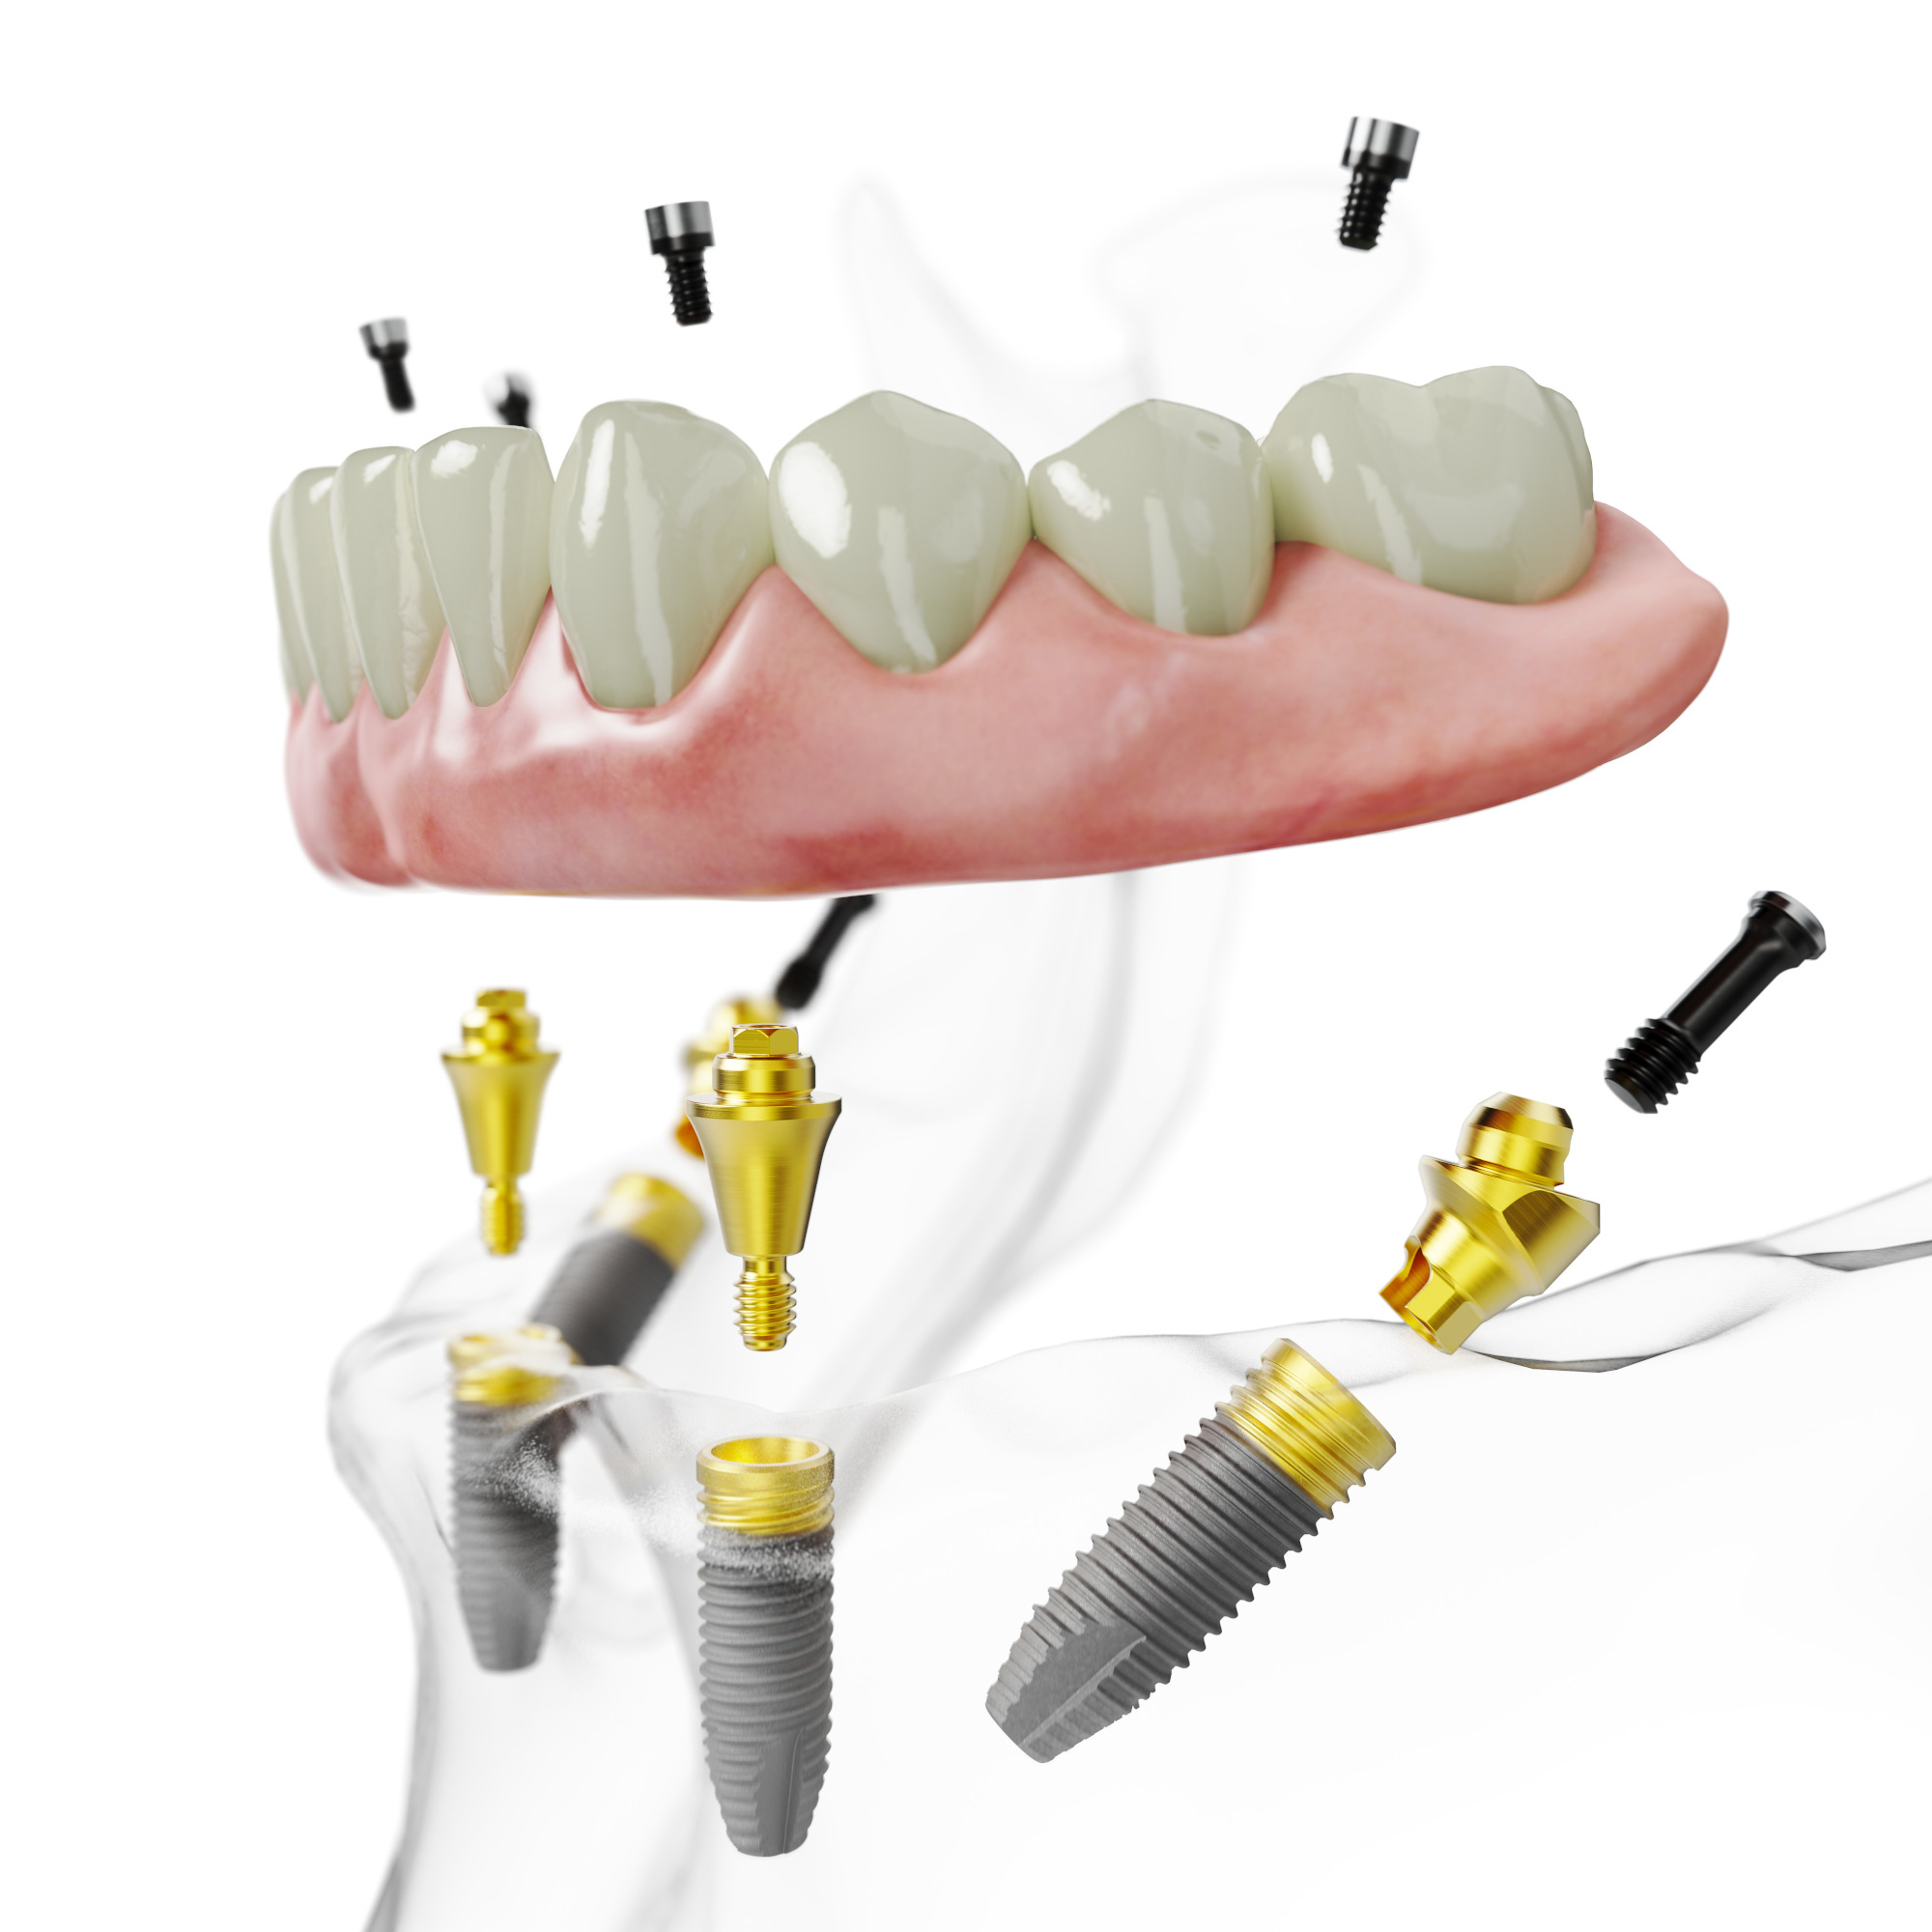 Das All-on-4® Behandlungskonzept: Suchen Sie eine Zahnersatzbehandlung auf 4 Implantaten die Ihr Leben verändert – ein neues Lächeln an einem Tag. 